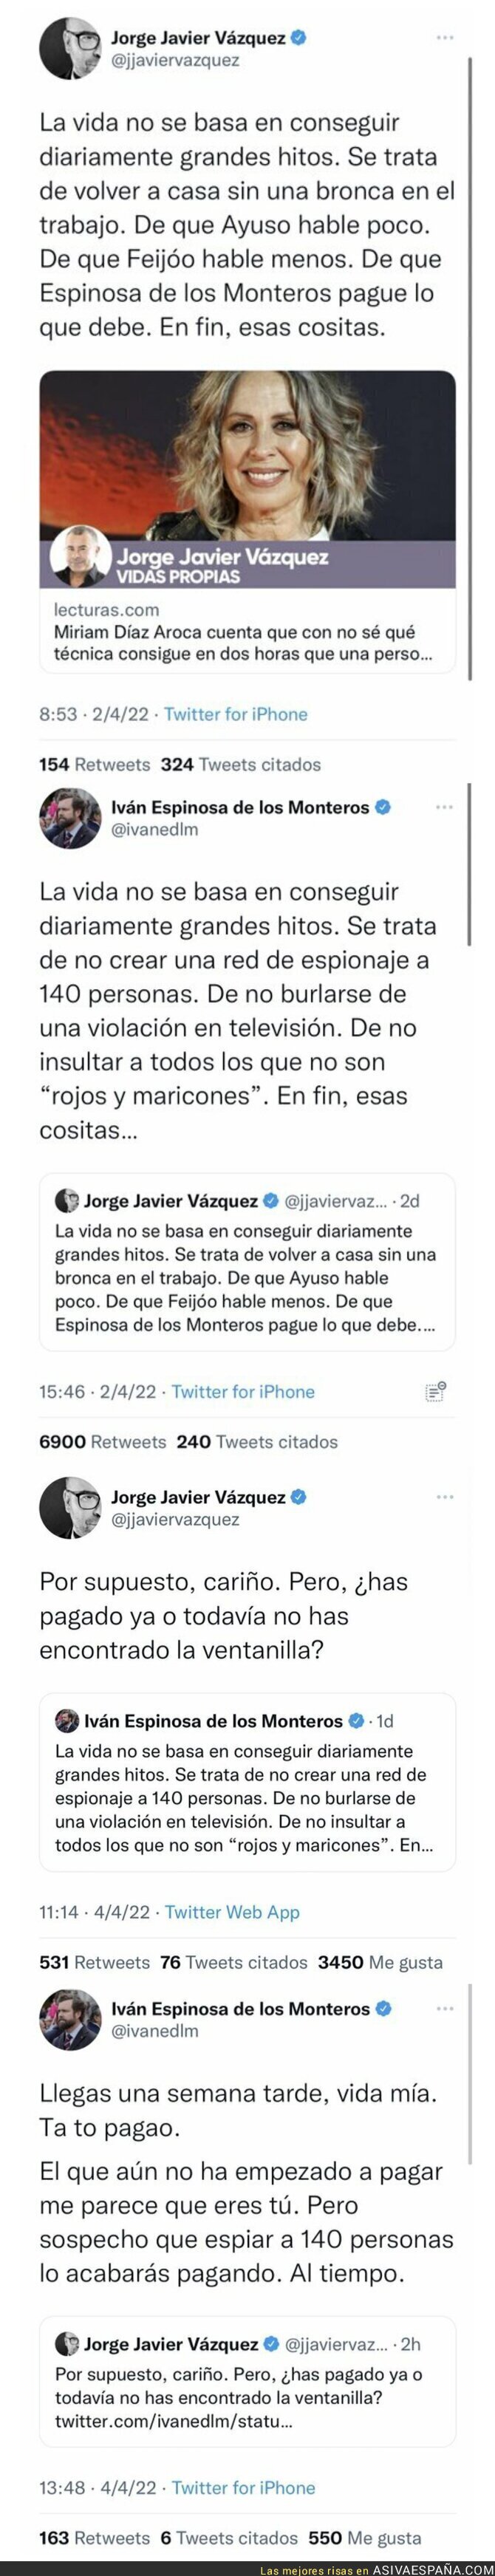 Jorge Javier Vázquez se enfrente por Twitter a Iván Espinosa de los Monteros y sale escaldado